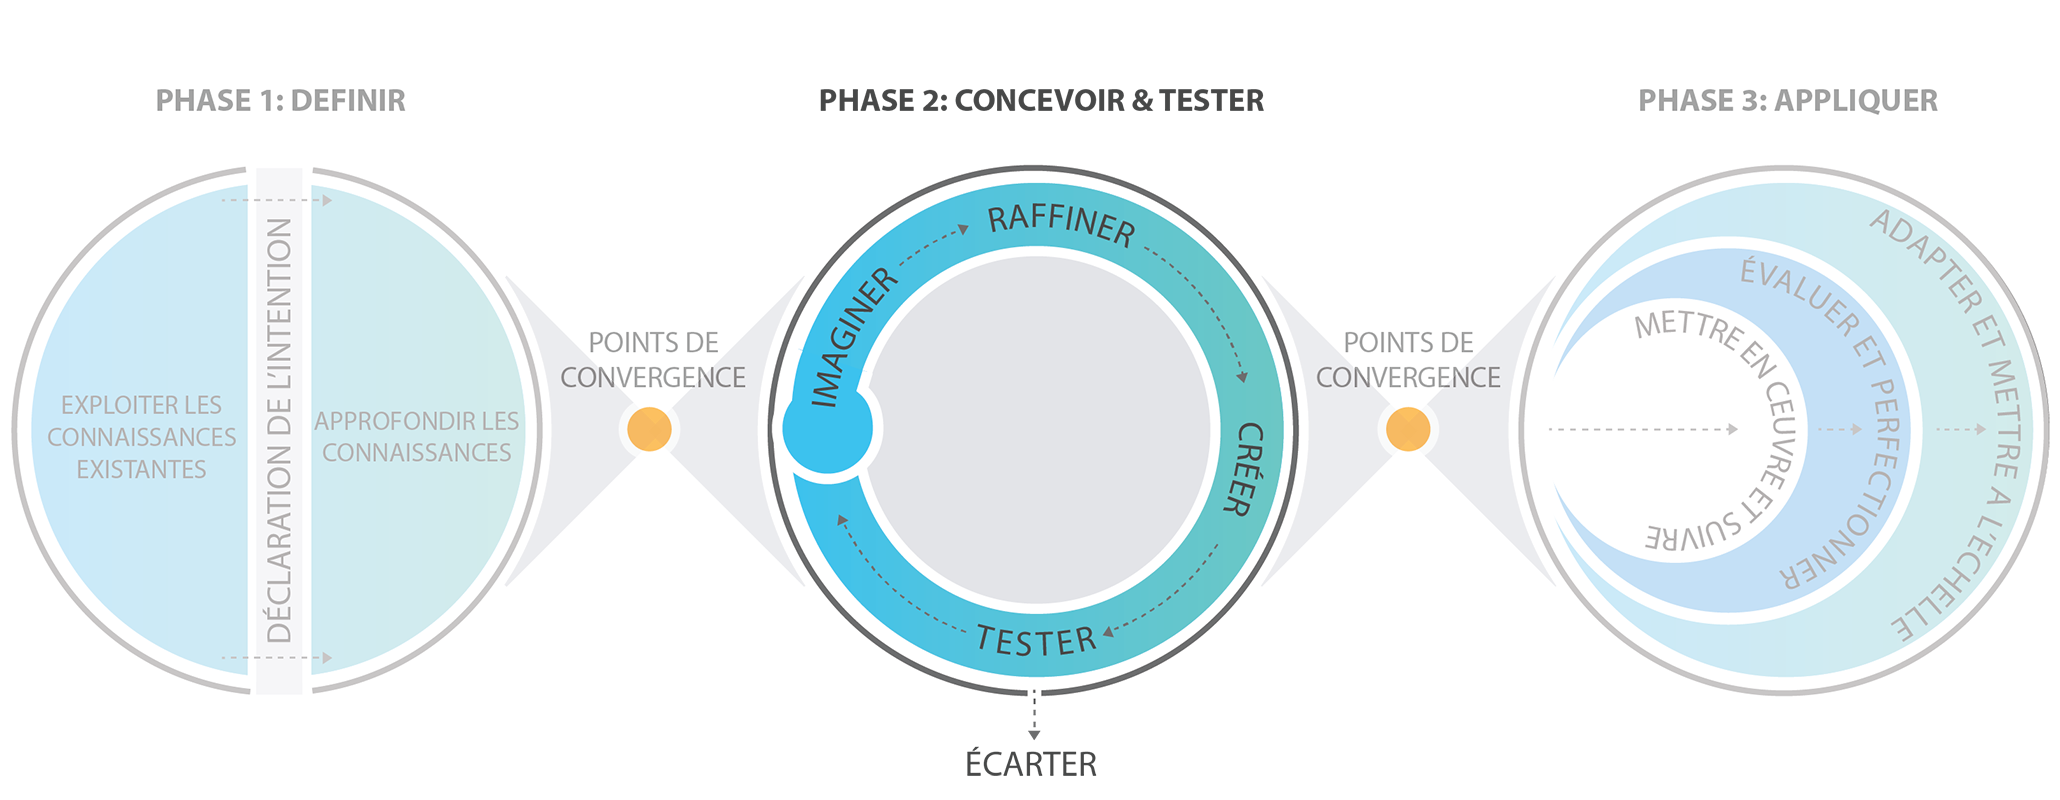 Phase 2 Concevoir & Tester : Imaginer, Raffiner, Créer, Tester